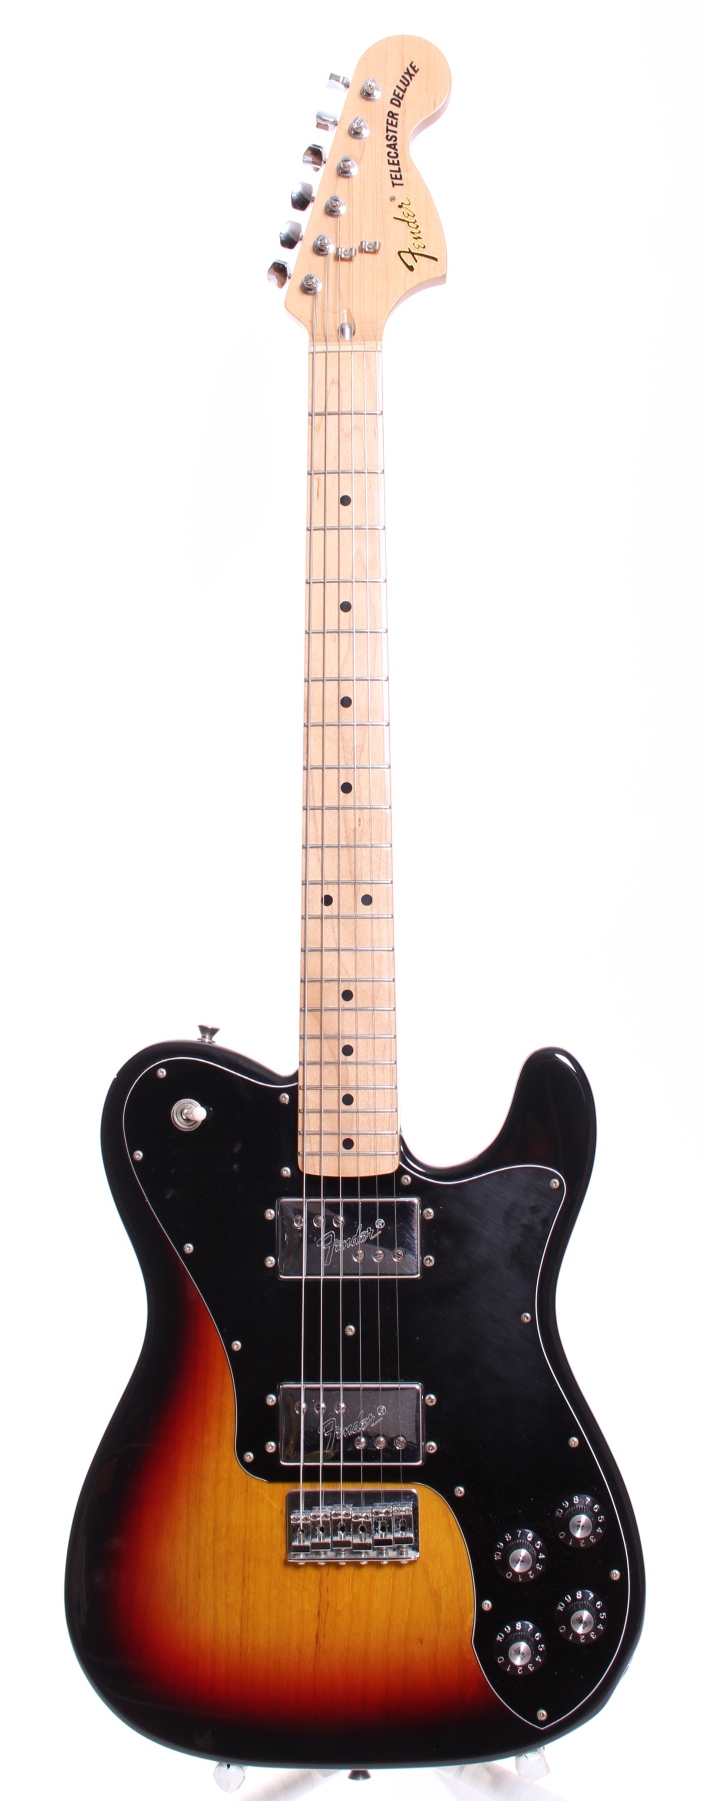 Fender Japan Telecaster Deluxe 2010 Sunburst Guitar For Sale